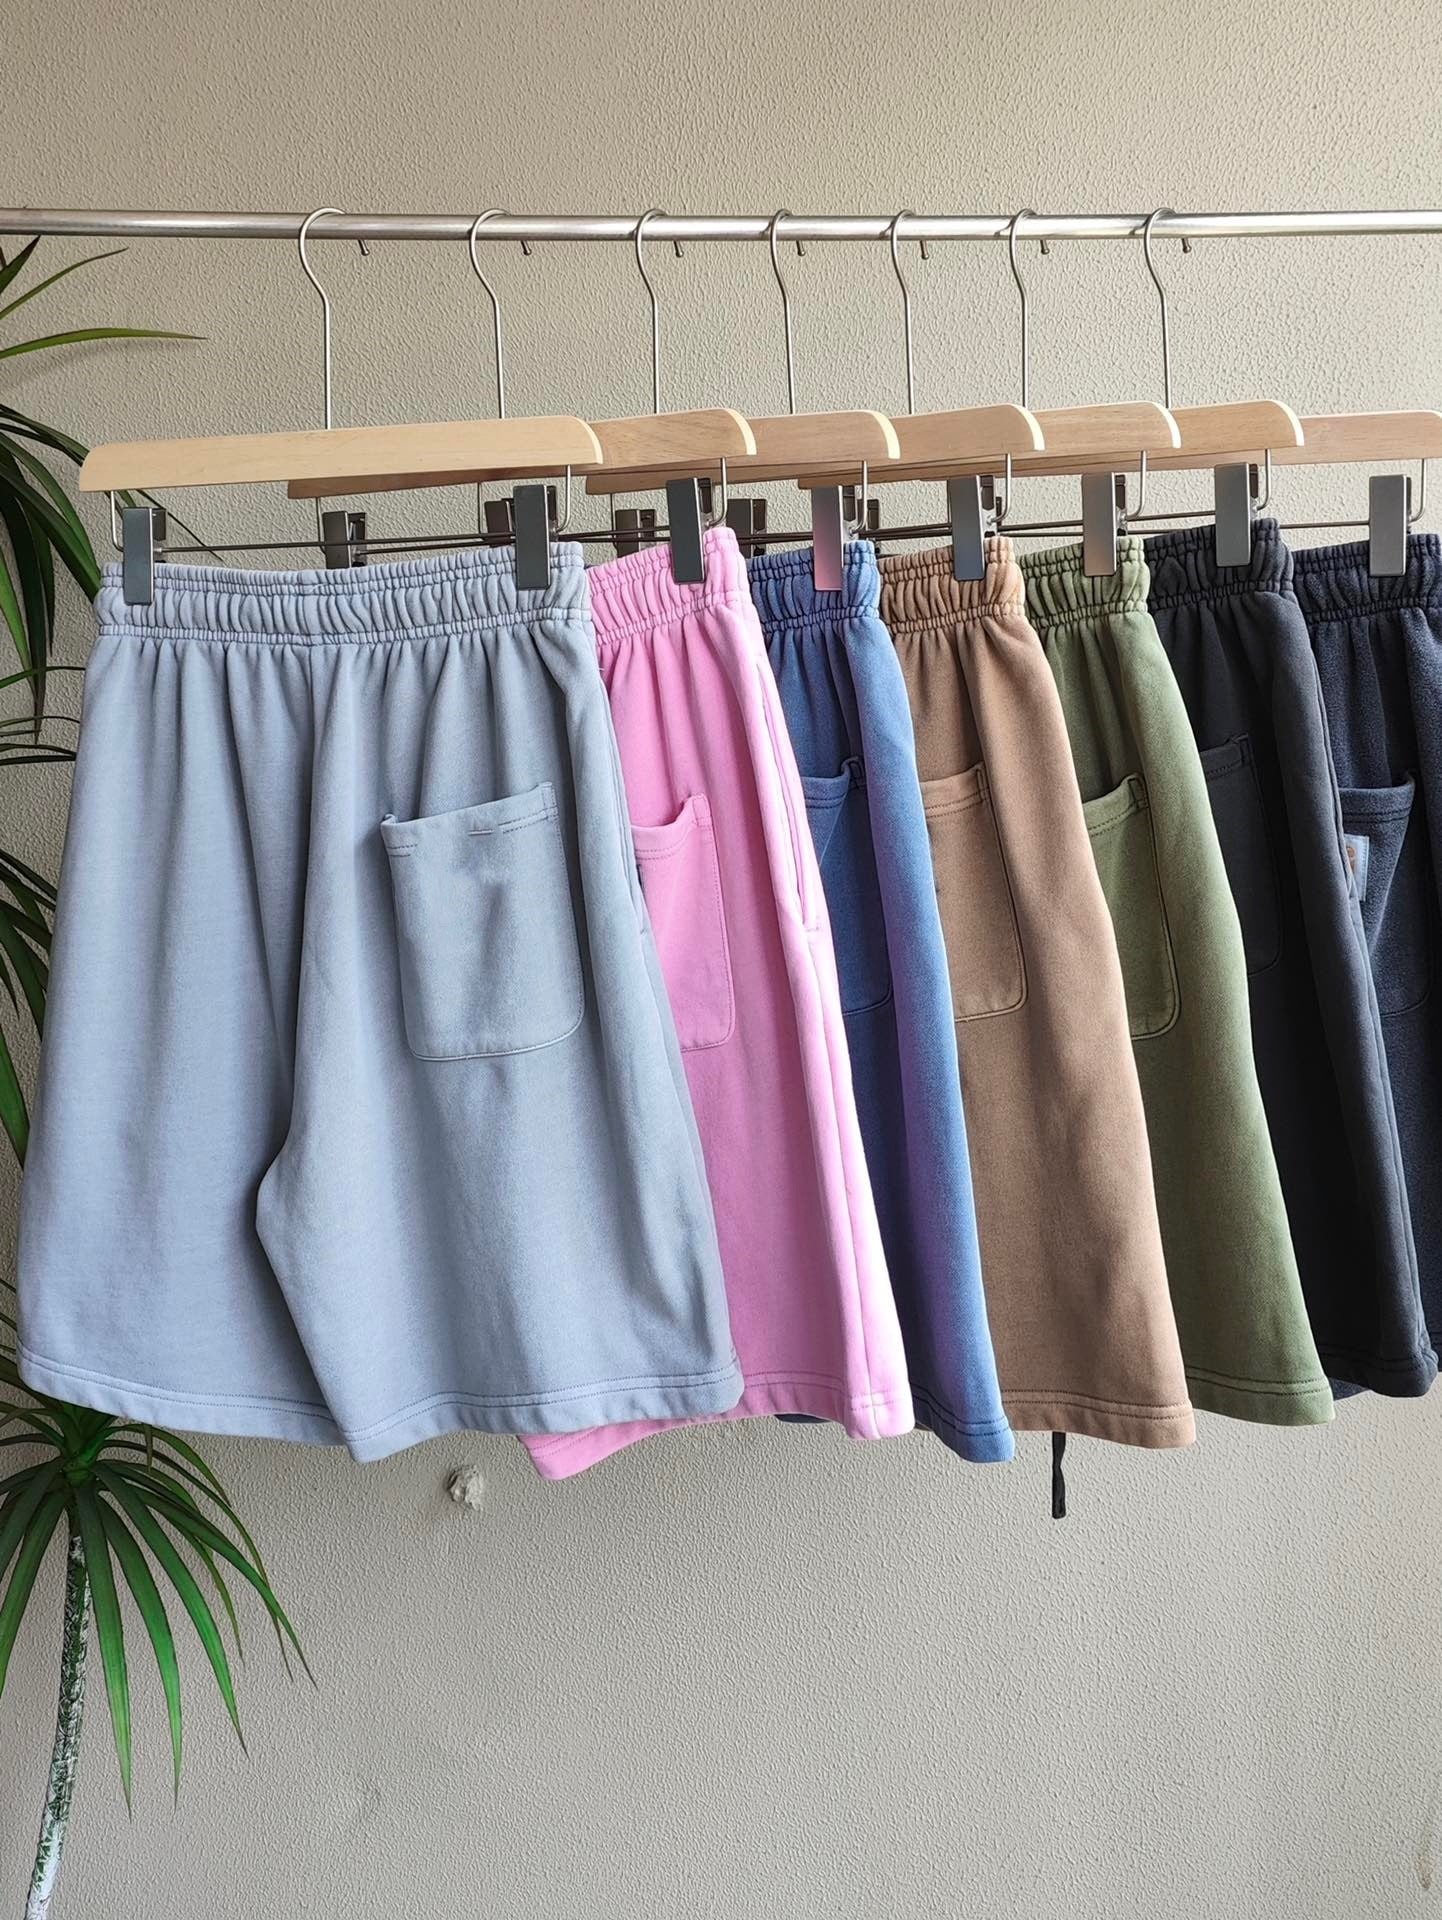 E2125# Unisex Shirts Shorts Set